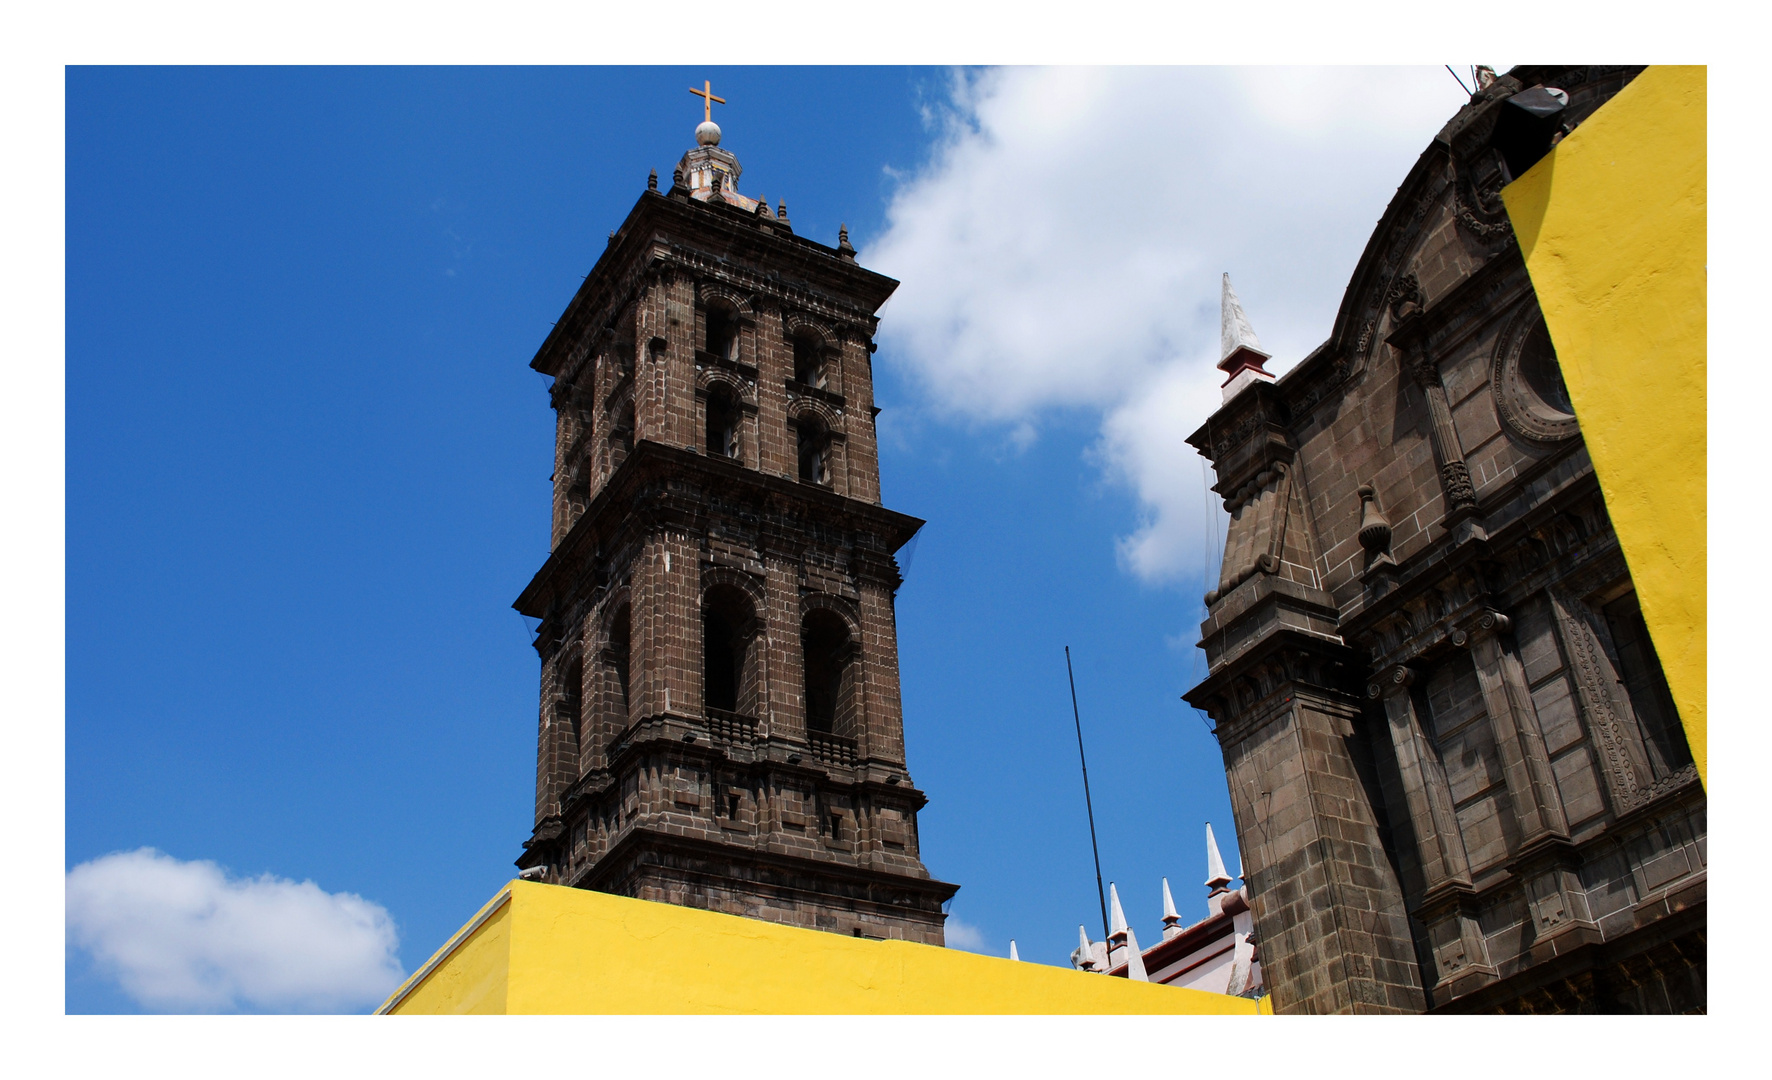 Catedral de Puebla